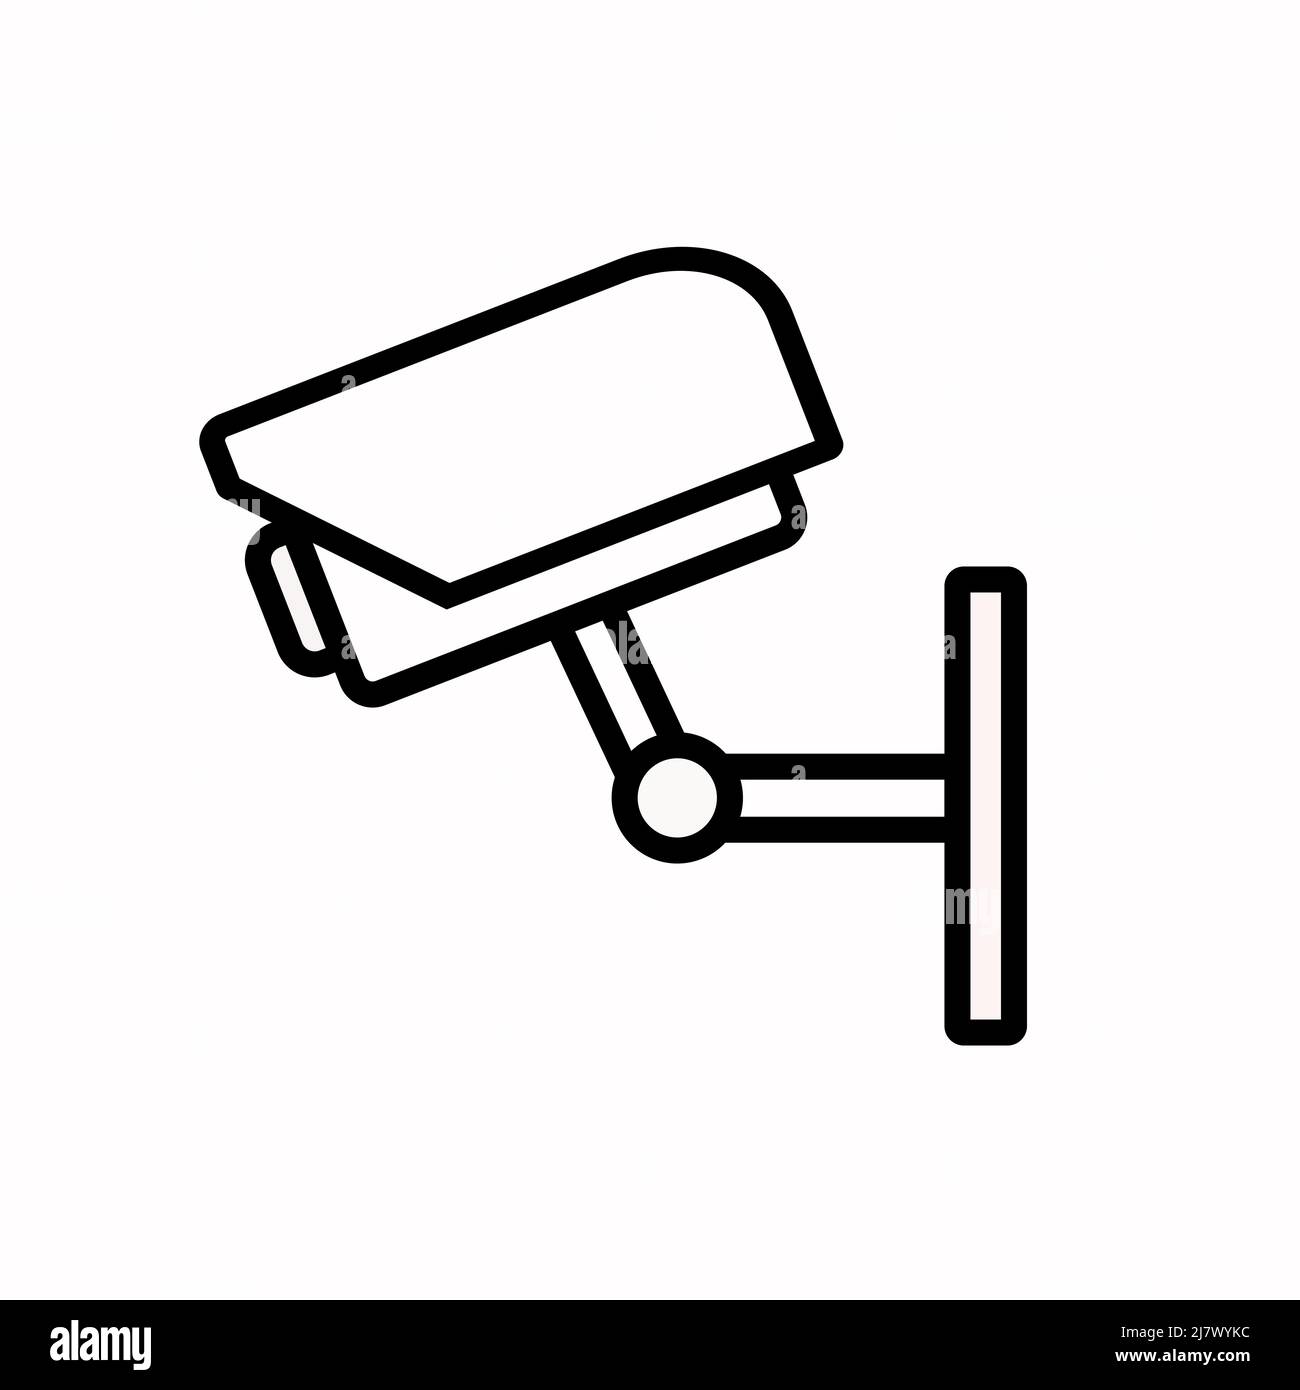 vettore icona cctv. Cartello di stile lineare per design mobile e web. Immagine del simbolo della telecamera di sicurezza. Grafica vettoriale pixel - vettore. Illustrazione Vettoriale